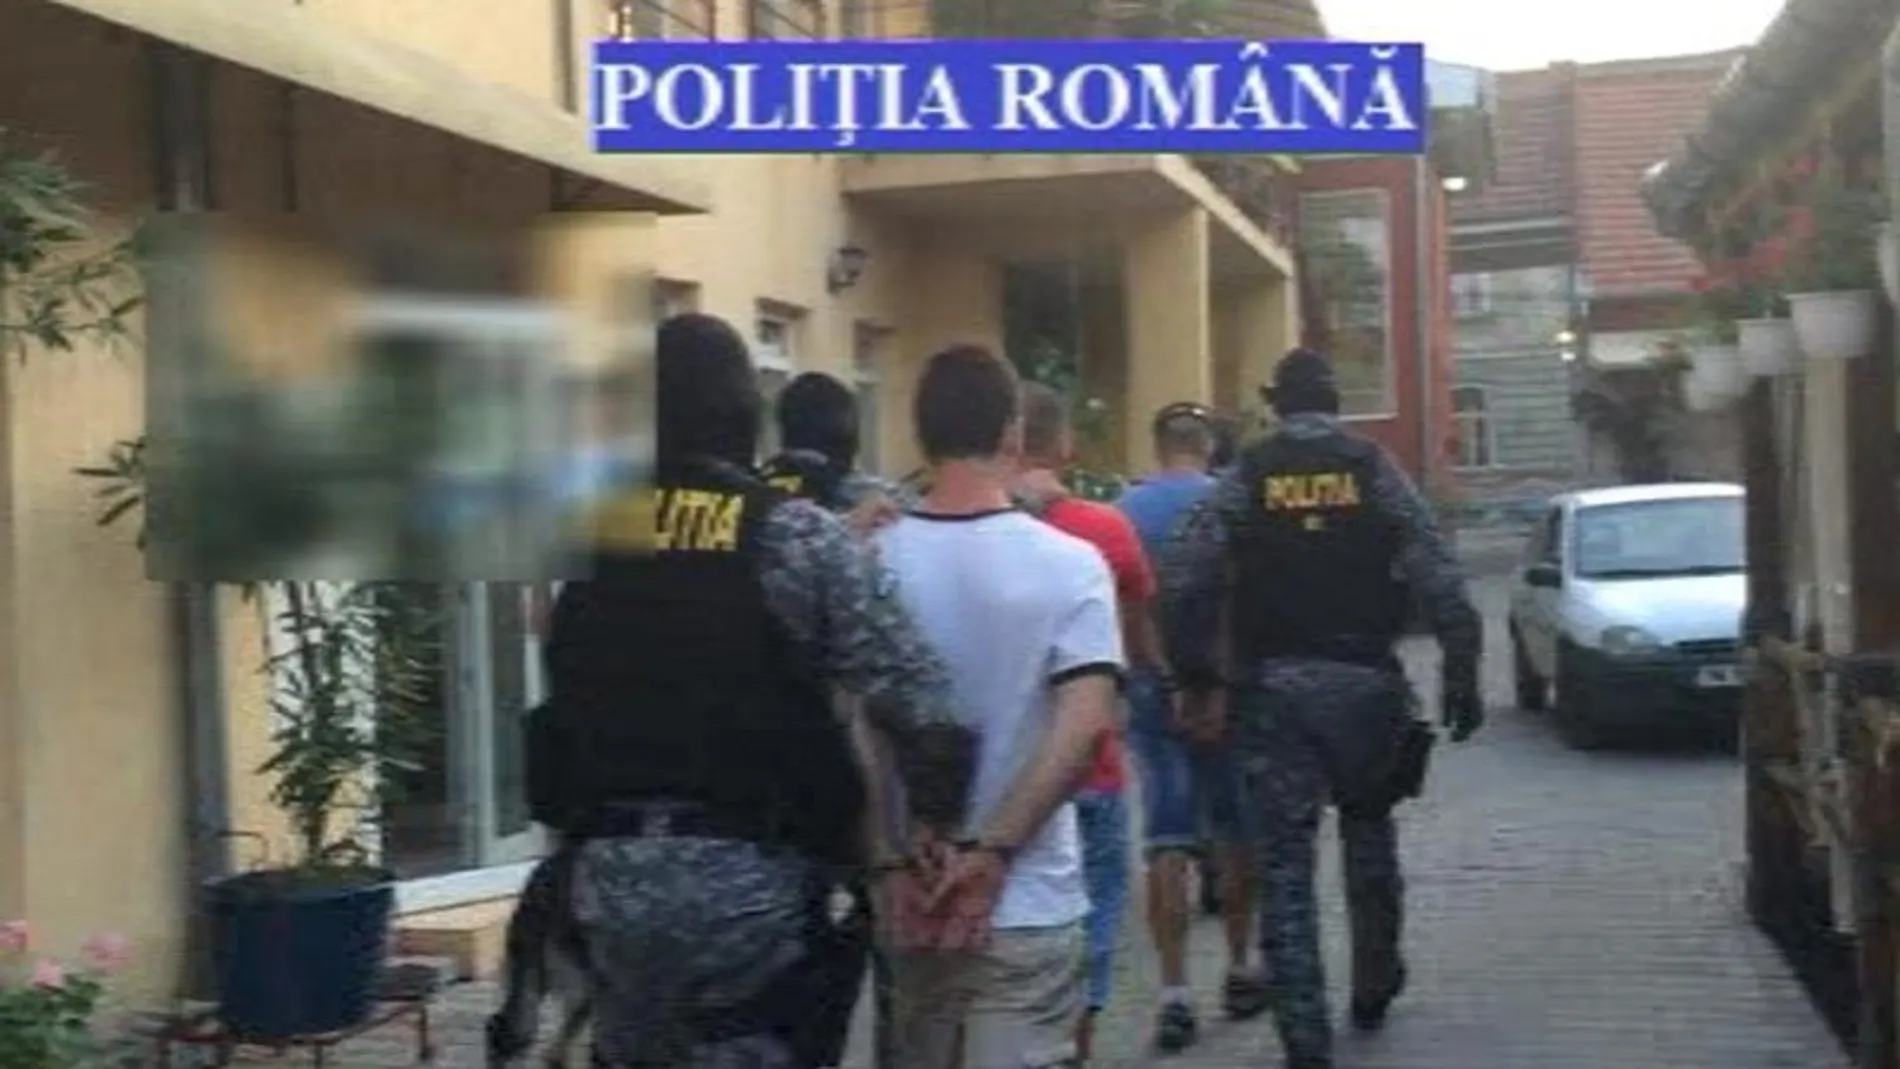 Imagen facilitada por la Policía rumana del traslado de Sergio Morate